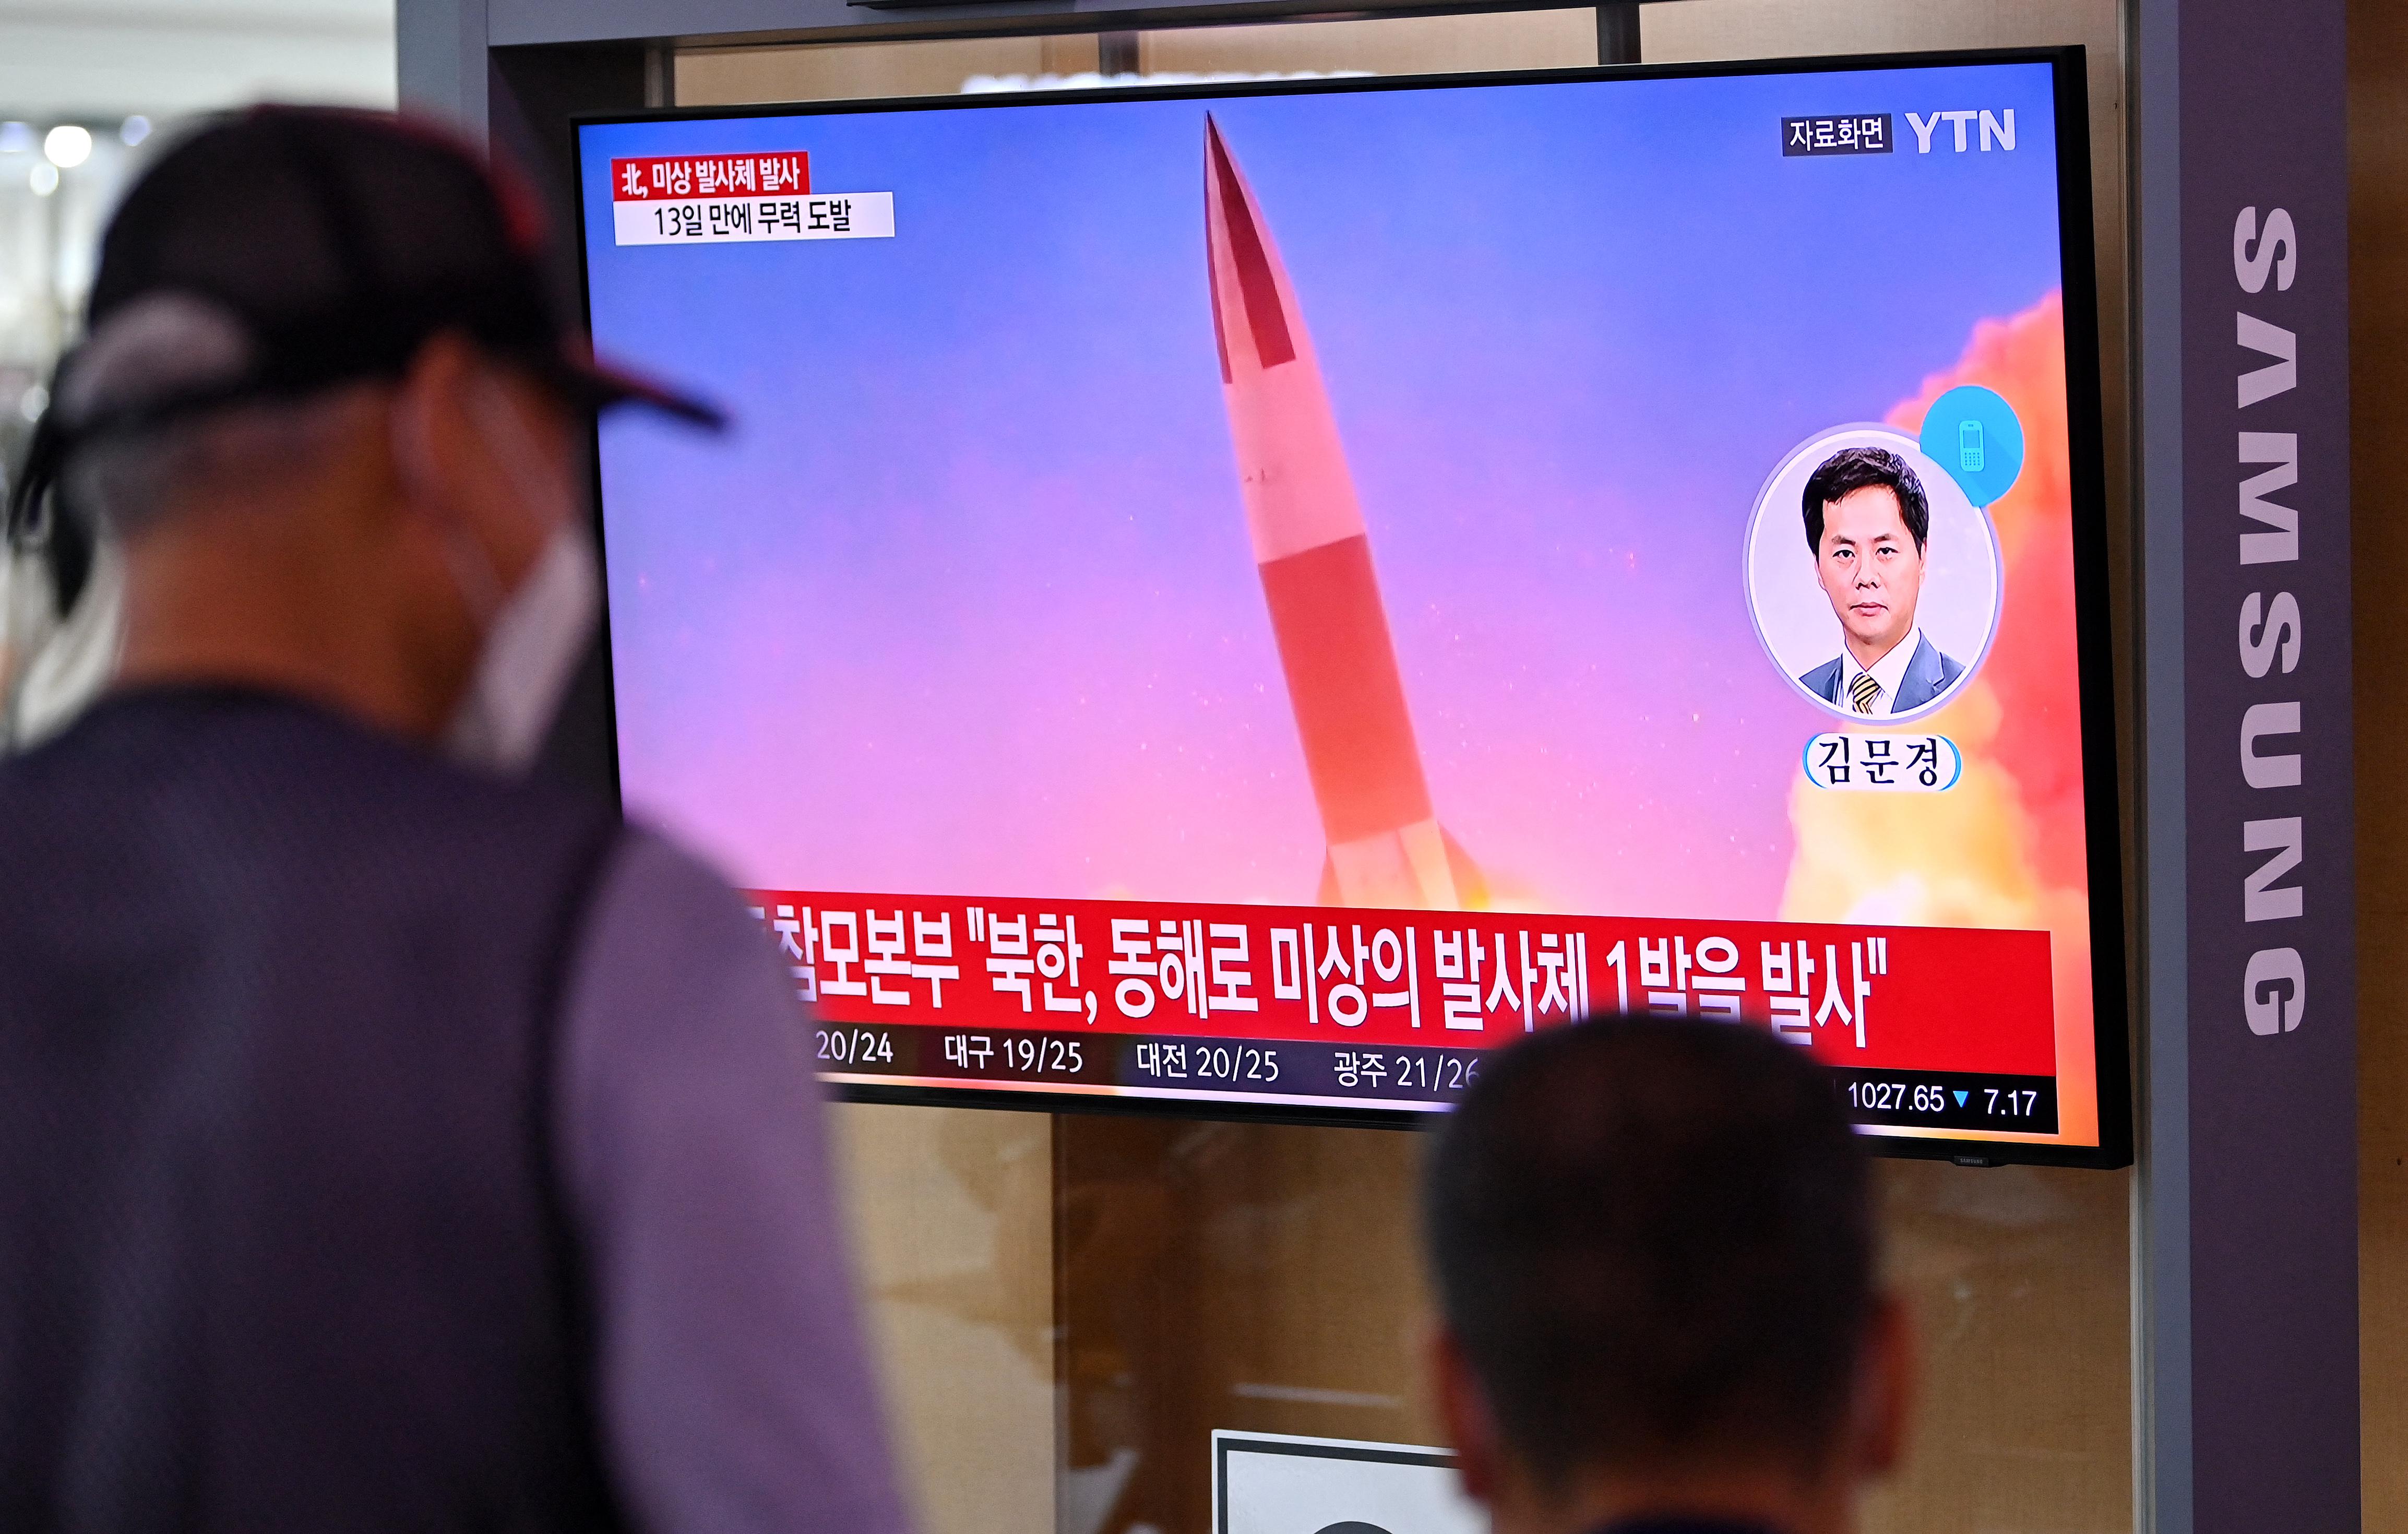 Tensioni crescenti tra Corea del Nord e Corea del Sud: Nuovi lLanci missilistici